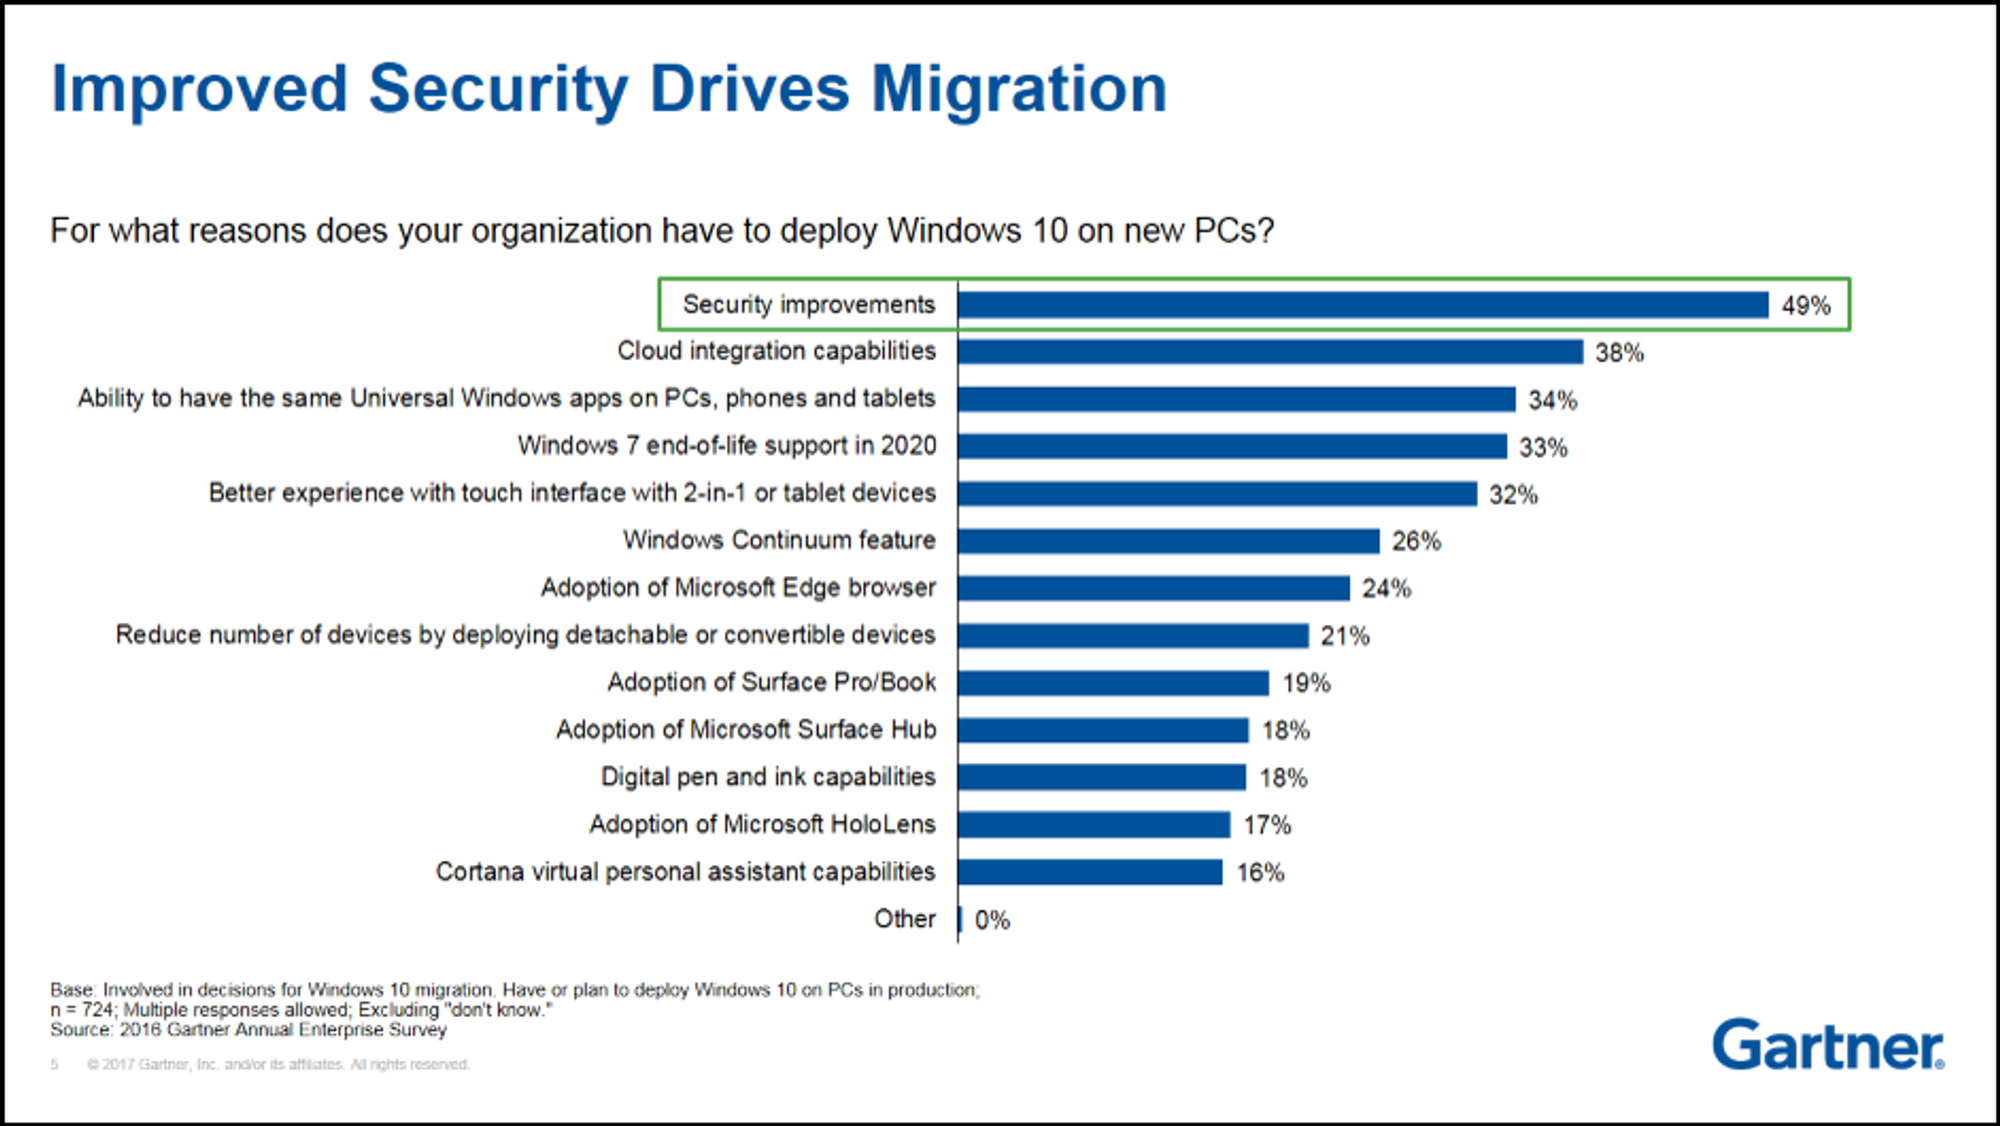 De viktigste årsakene til at virksomheter ønsker å ta i bruk Windows 10 på nye pc-er.